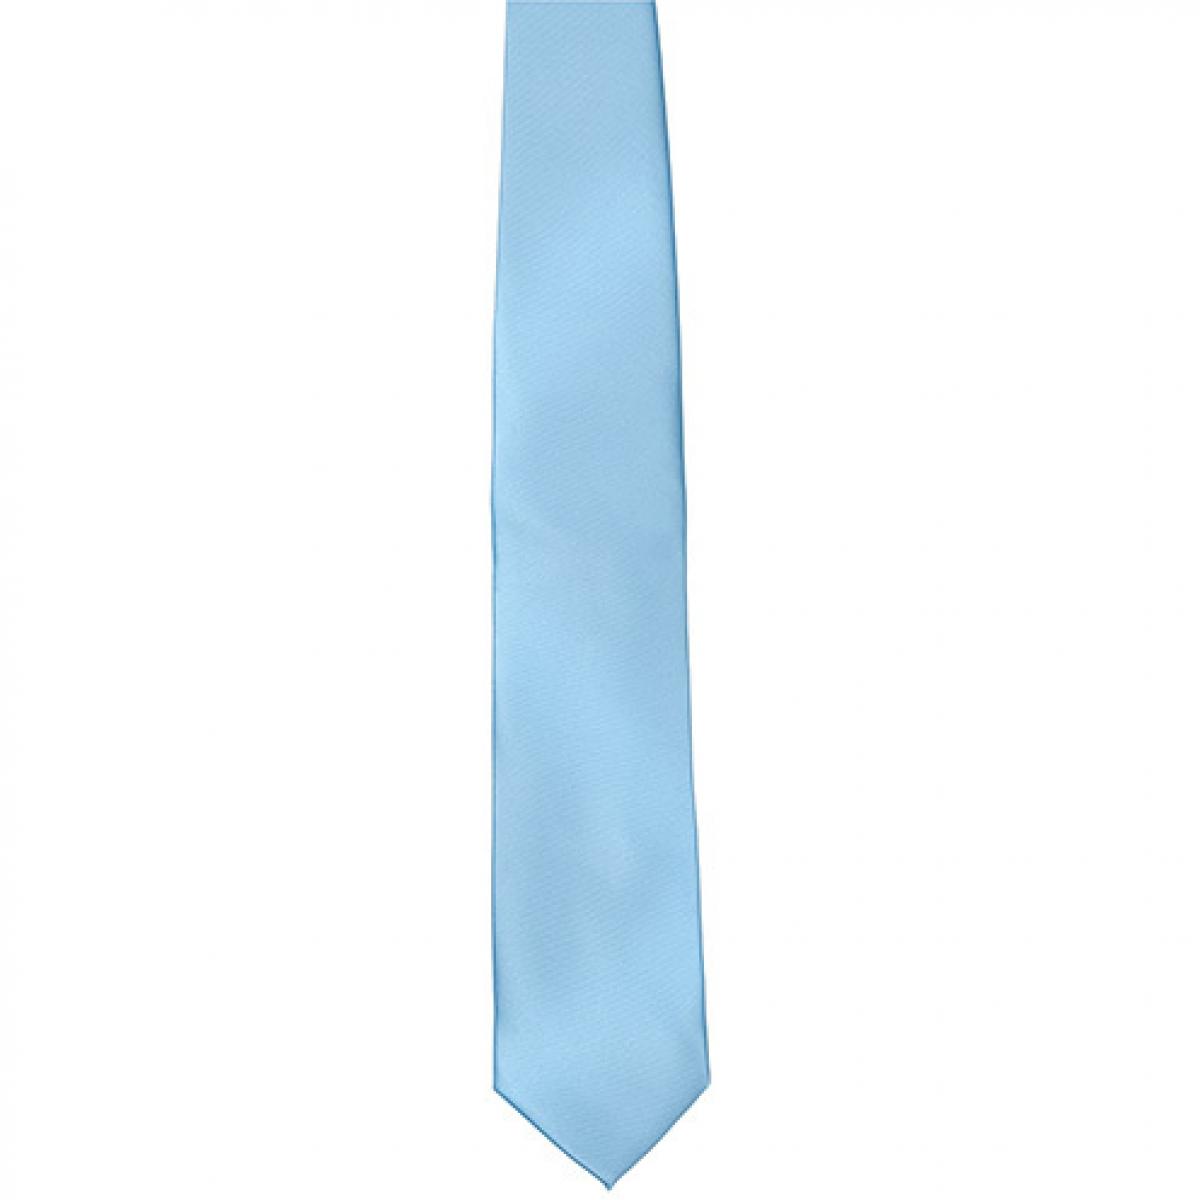 Hersteller: TYTO Herstellernummer: TT901 Artikelbezeichnung: Satin Tie / 144 x 8,5cm /  Zu 100% von Hand genäht Farbe: Light Blue